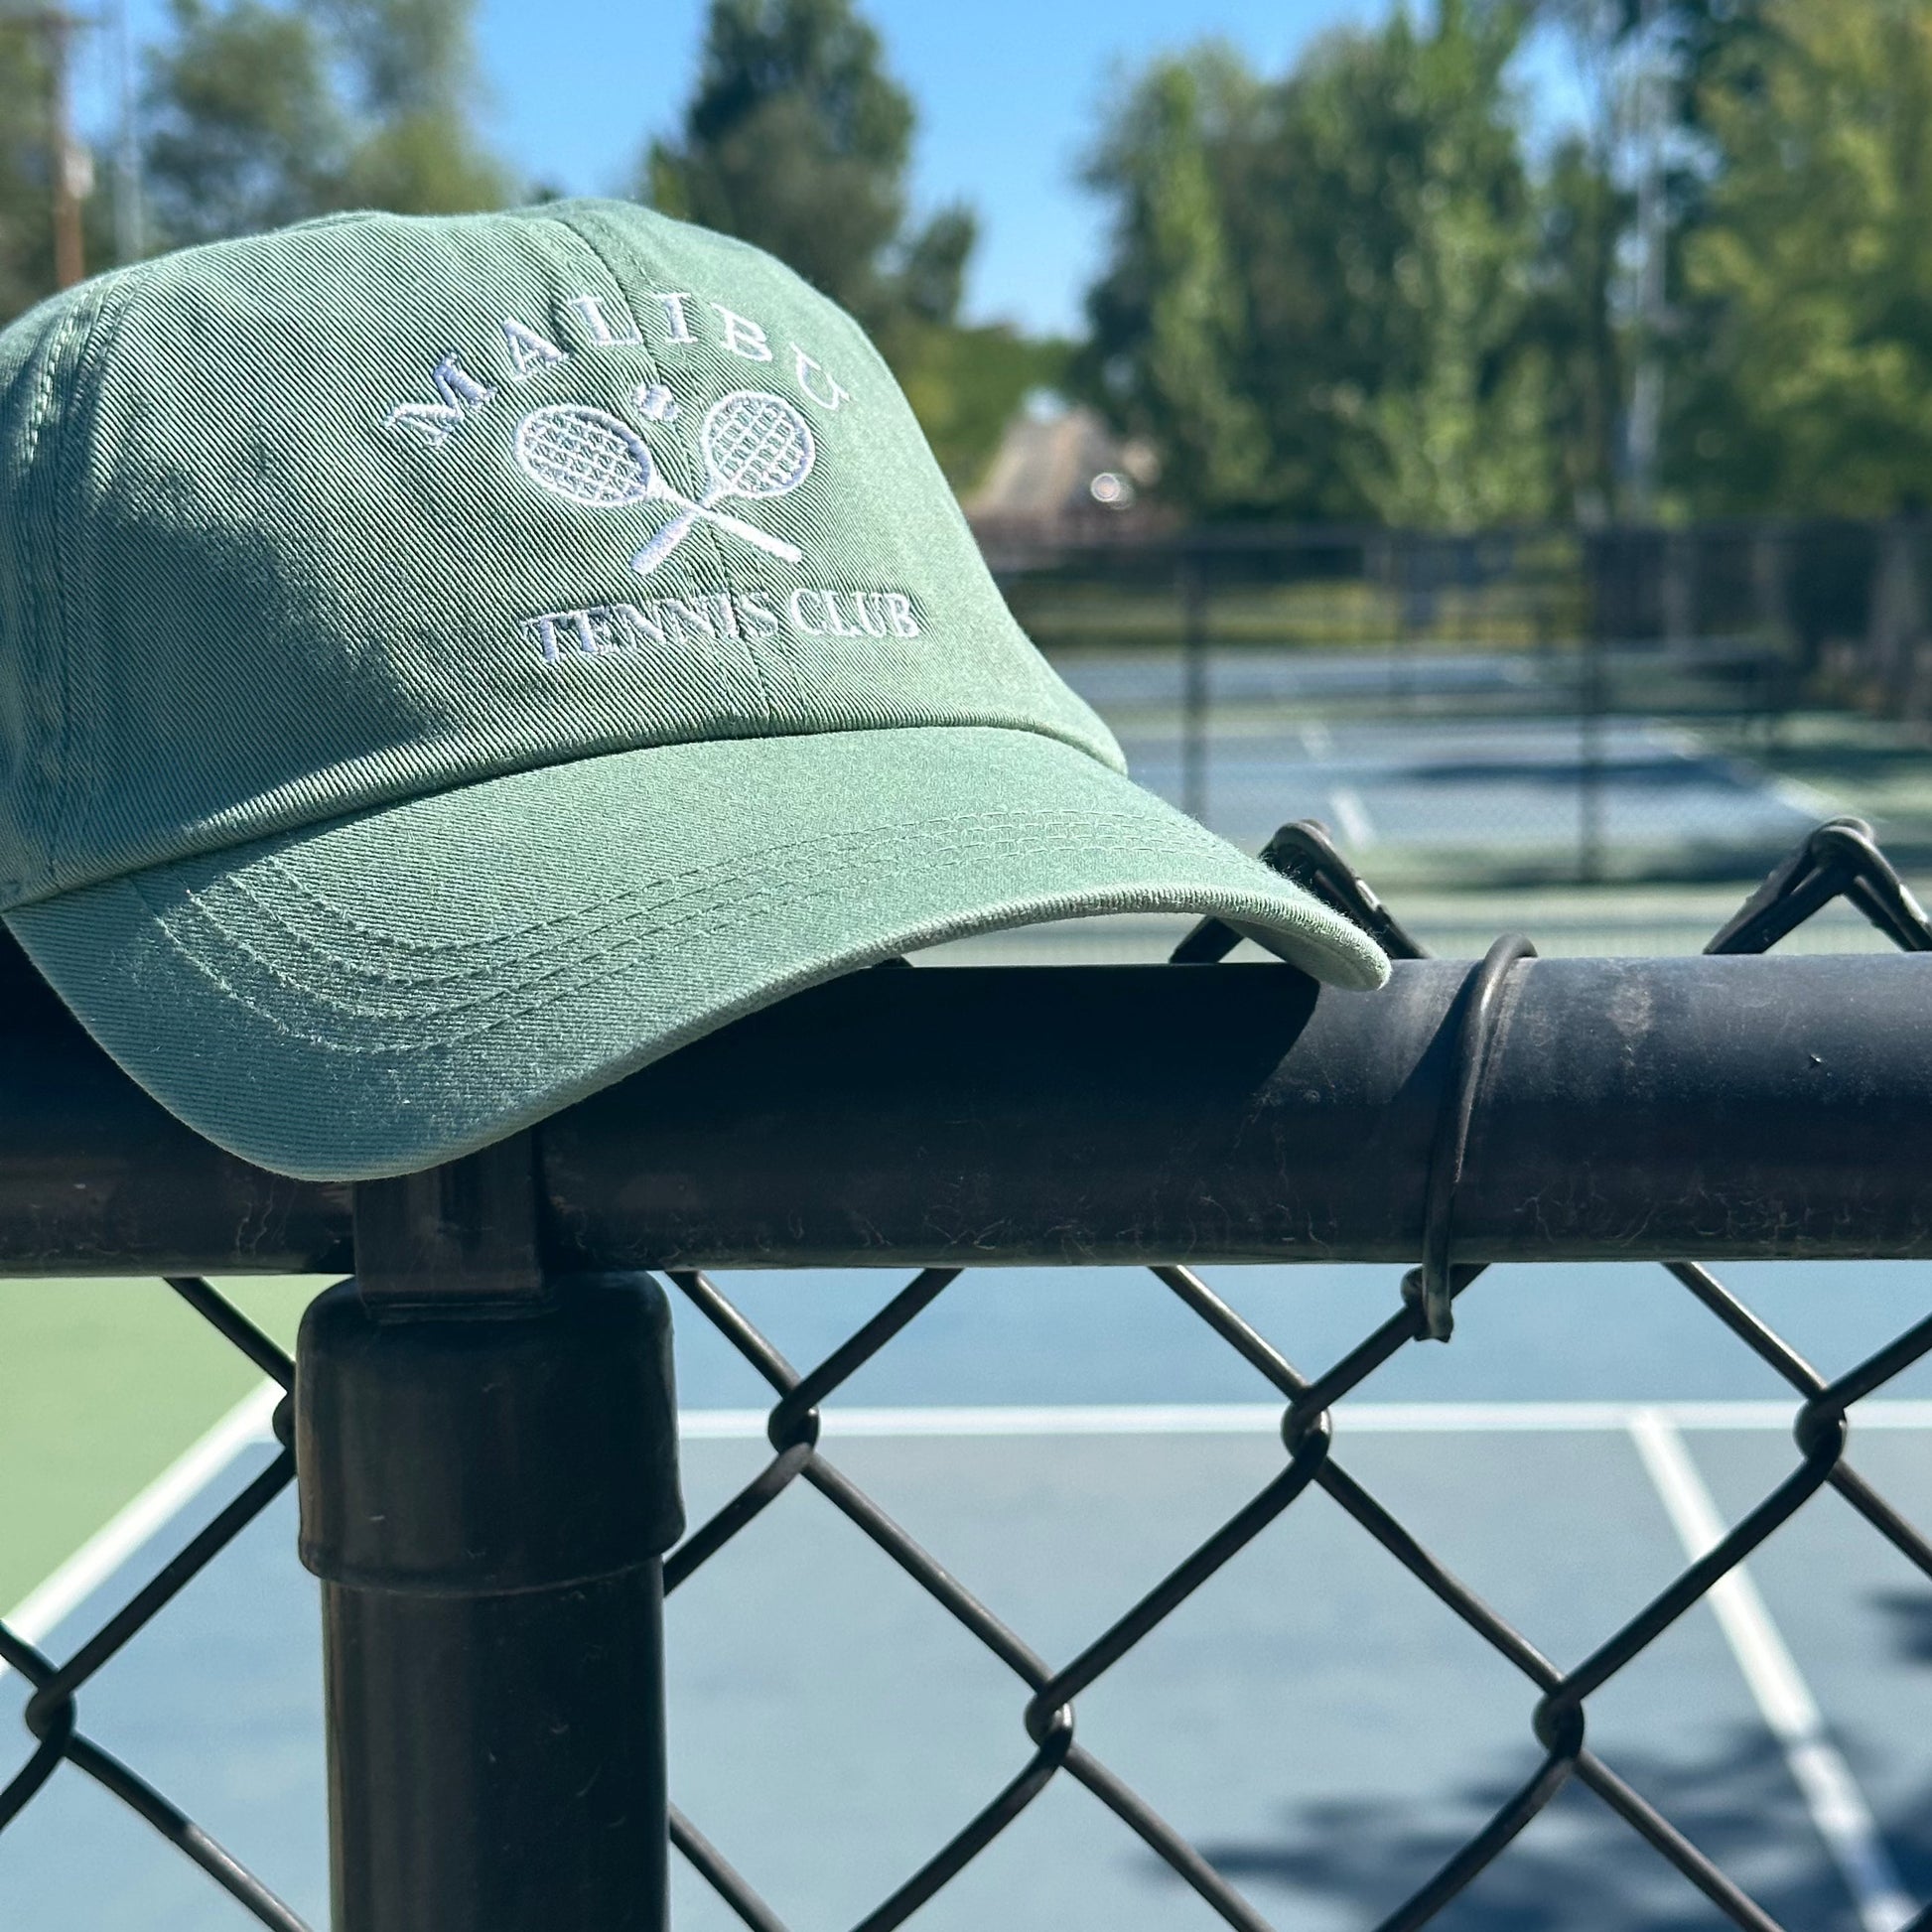 Malibu tennis club dad Green Wear Athletic hat – Ever